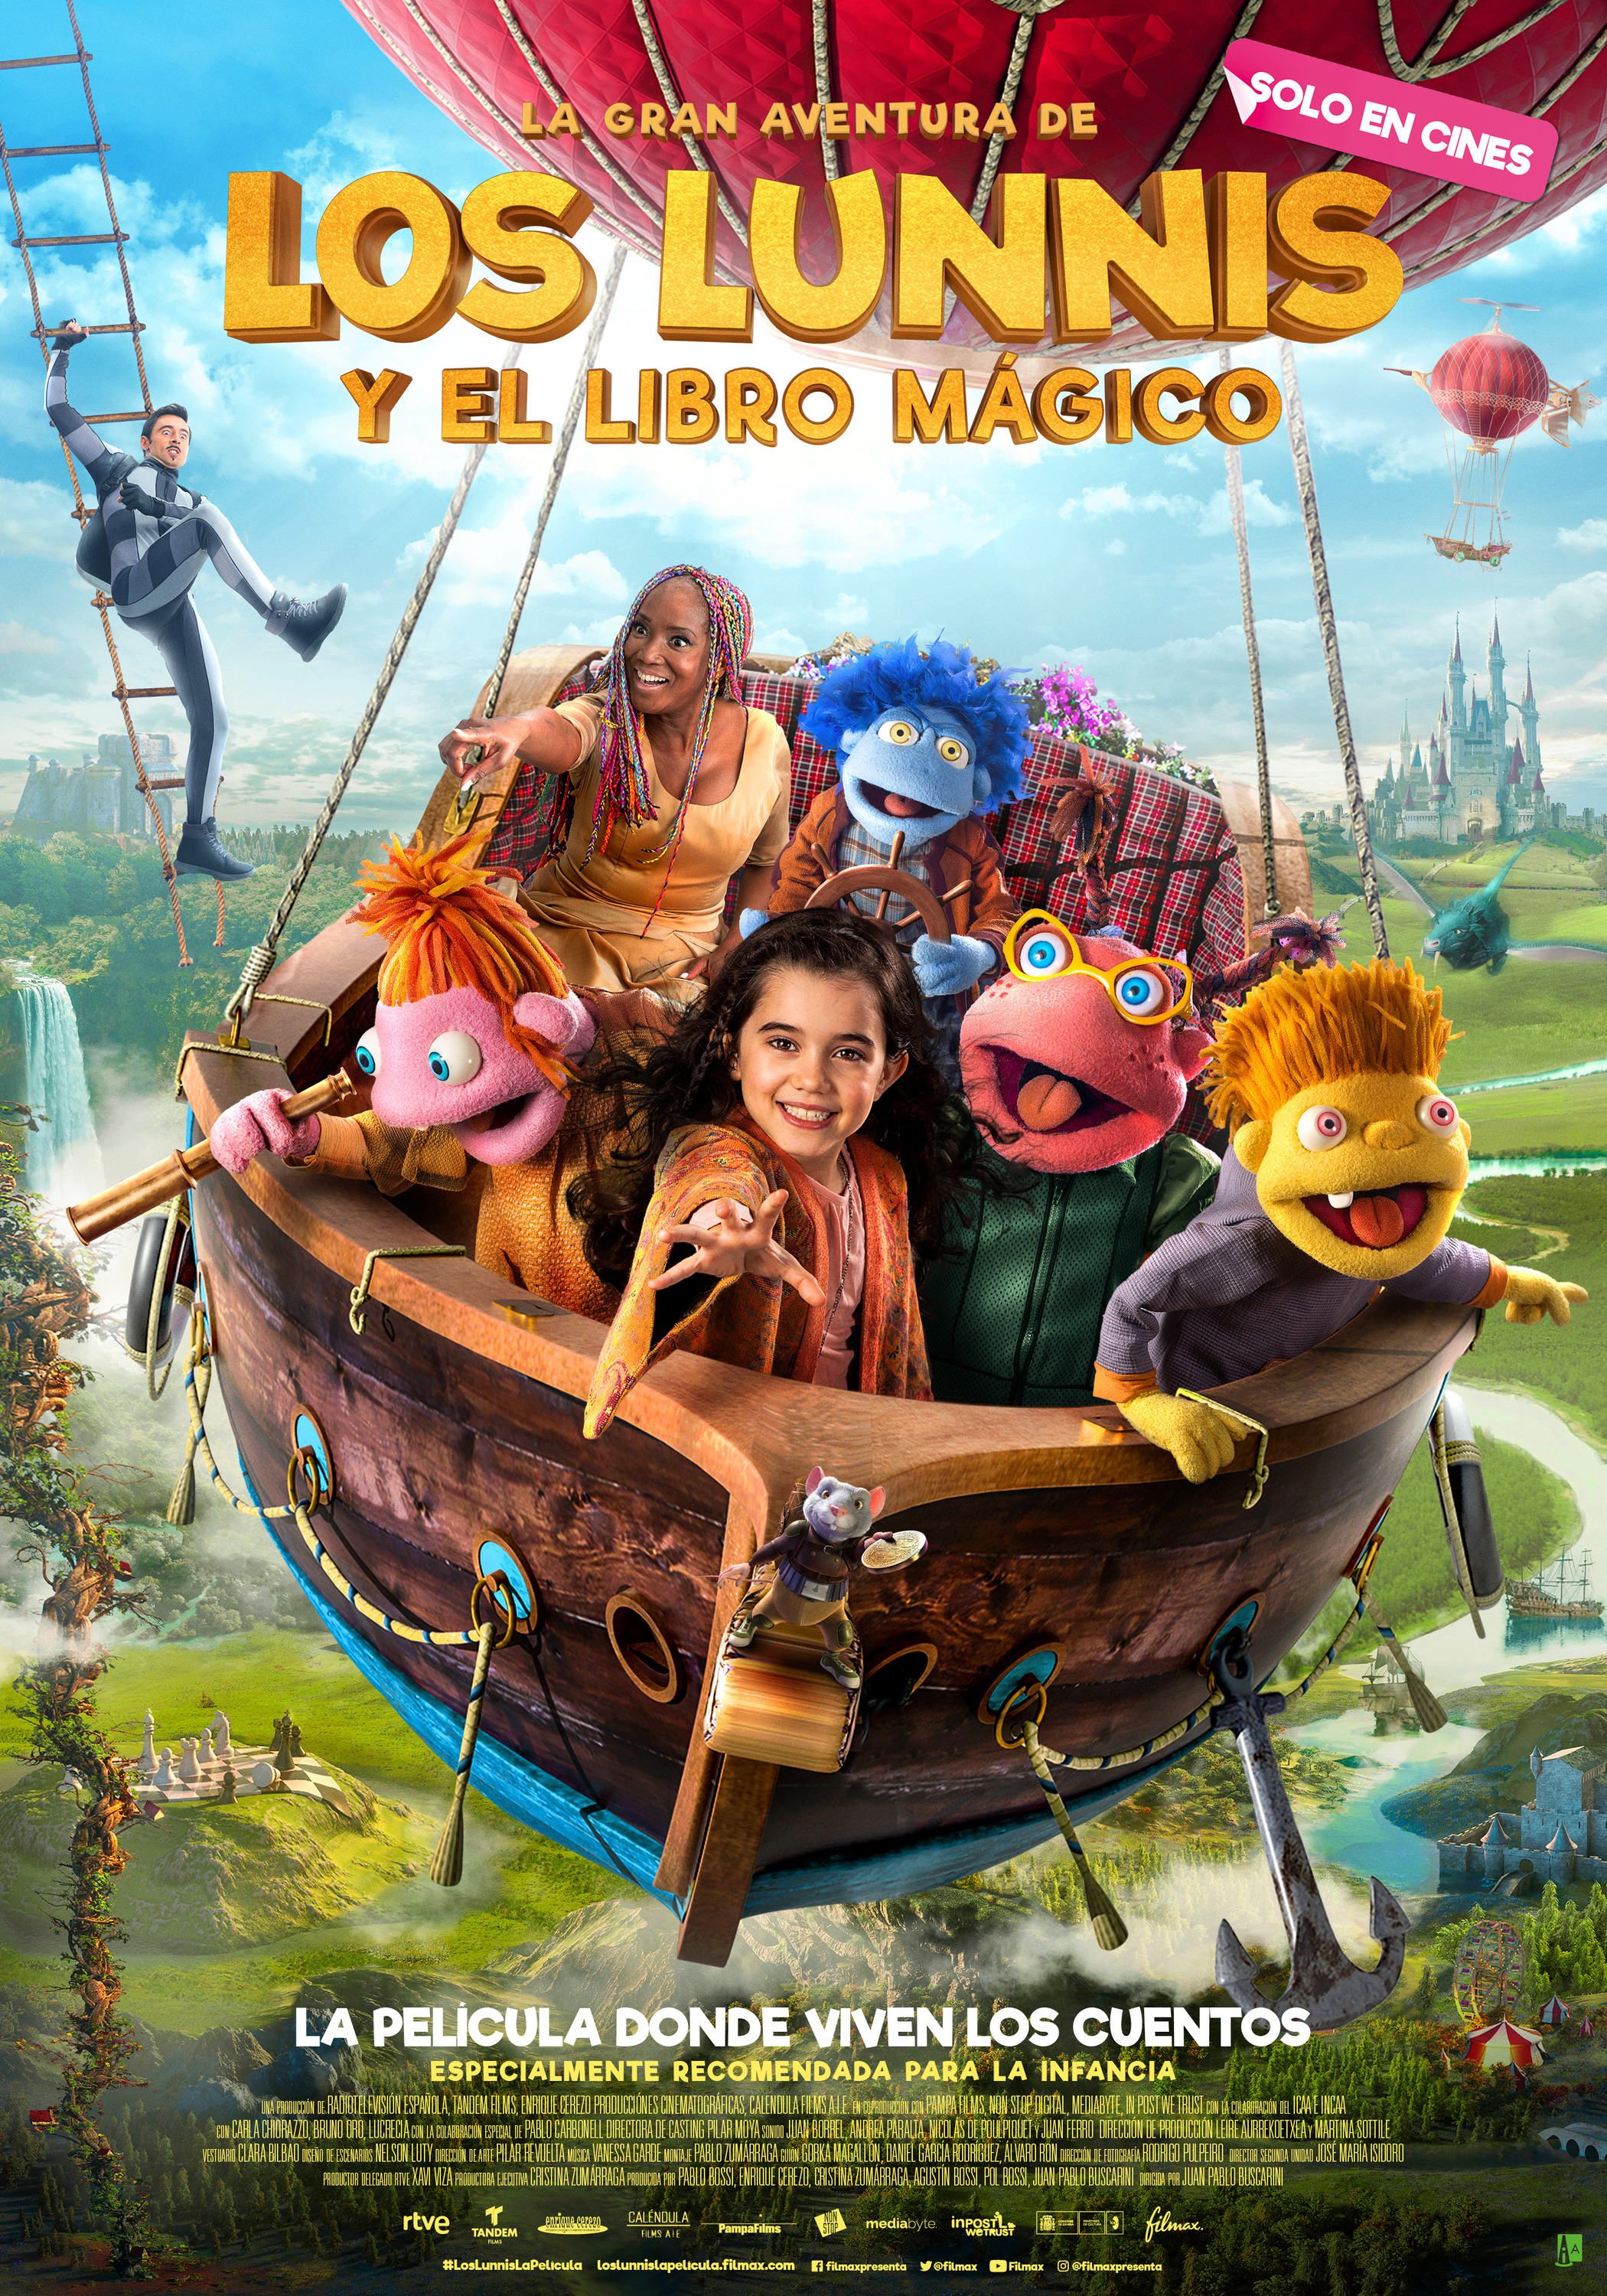 Mega Sized Movie Poster Image for La gran aventura de los Lunnis y el libro mágico 